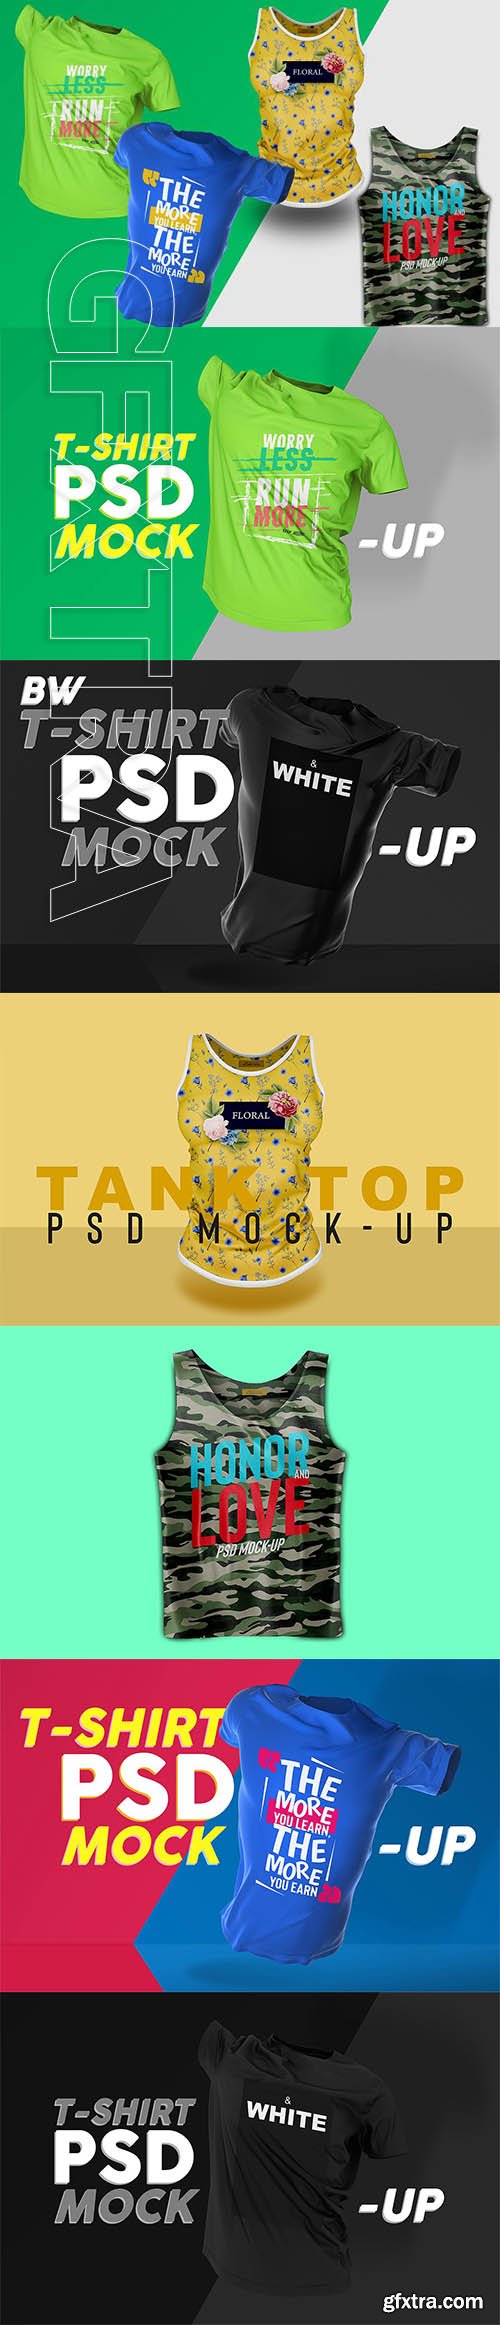 CreativeMarket - T-Shirt and Tank Top PSD Mockup Set 3247511